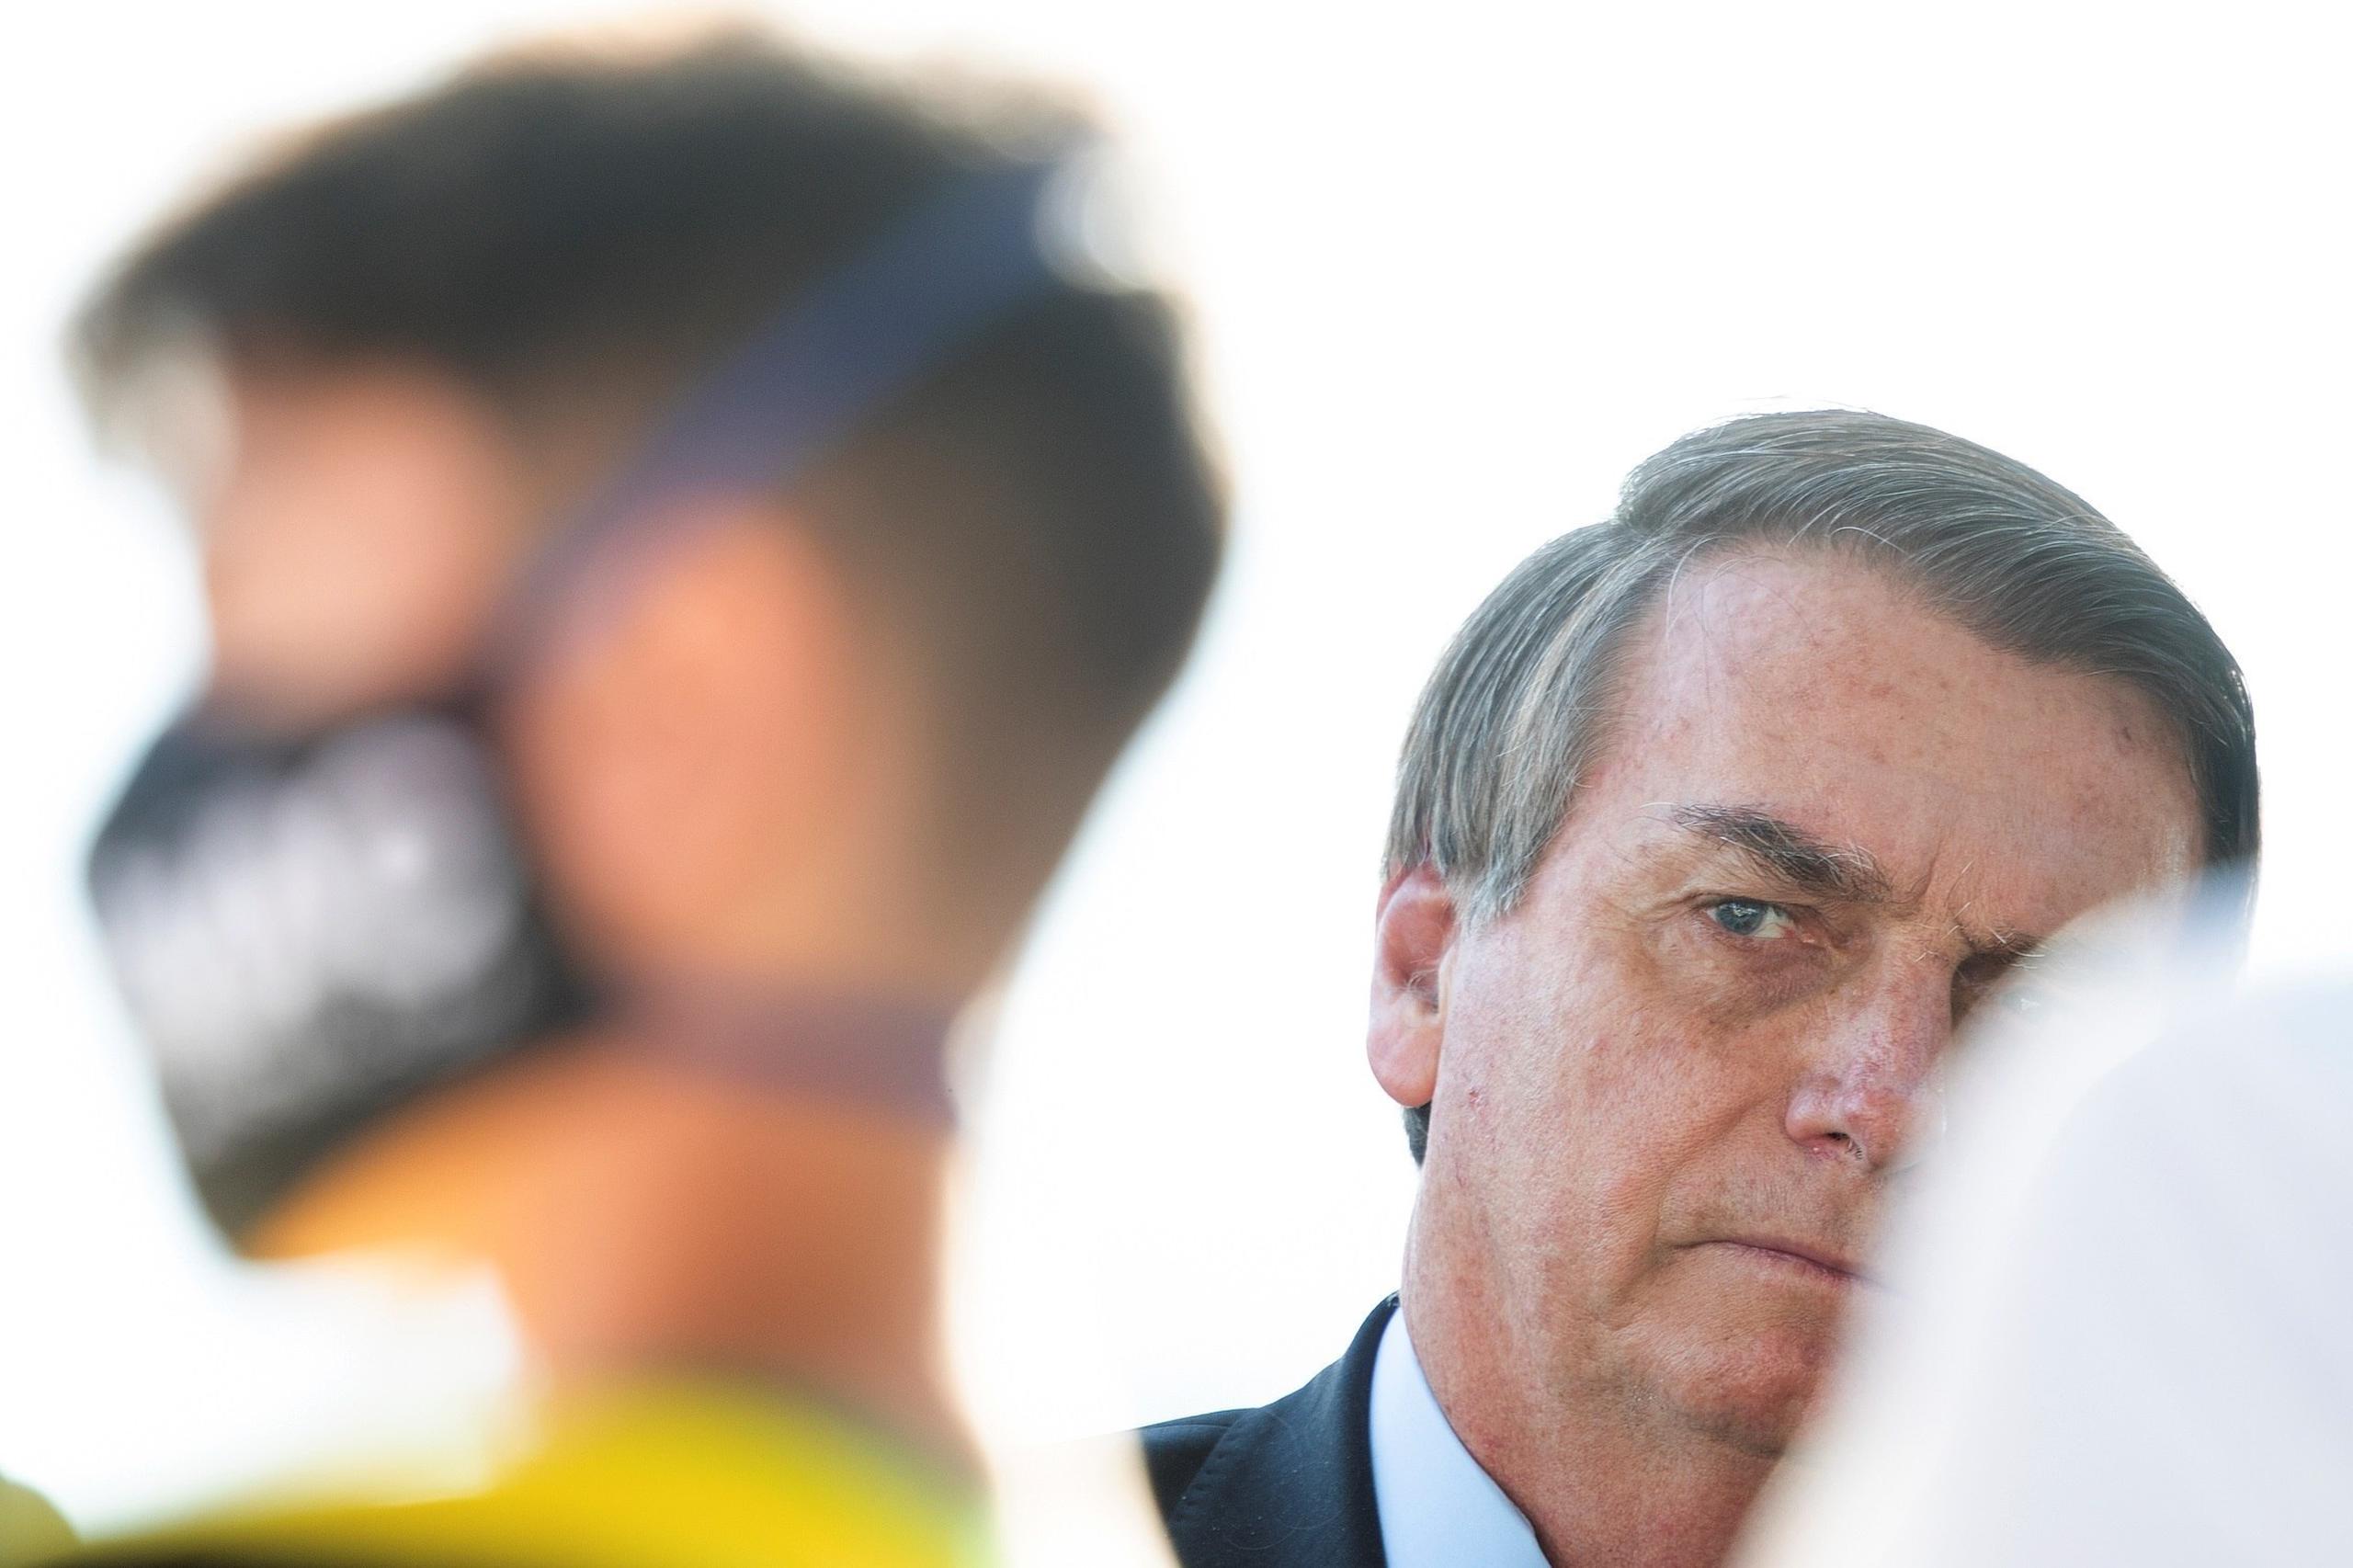 Un aliado de Bolsonaro dijo al periódico O Globo que al menos algunos estados que enviaban cifras al Ministerio de Salud habían mandado datos falsificados, insinuando que estaban exagerando las cifras.